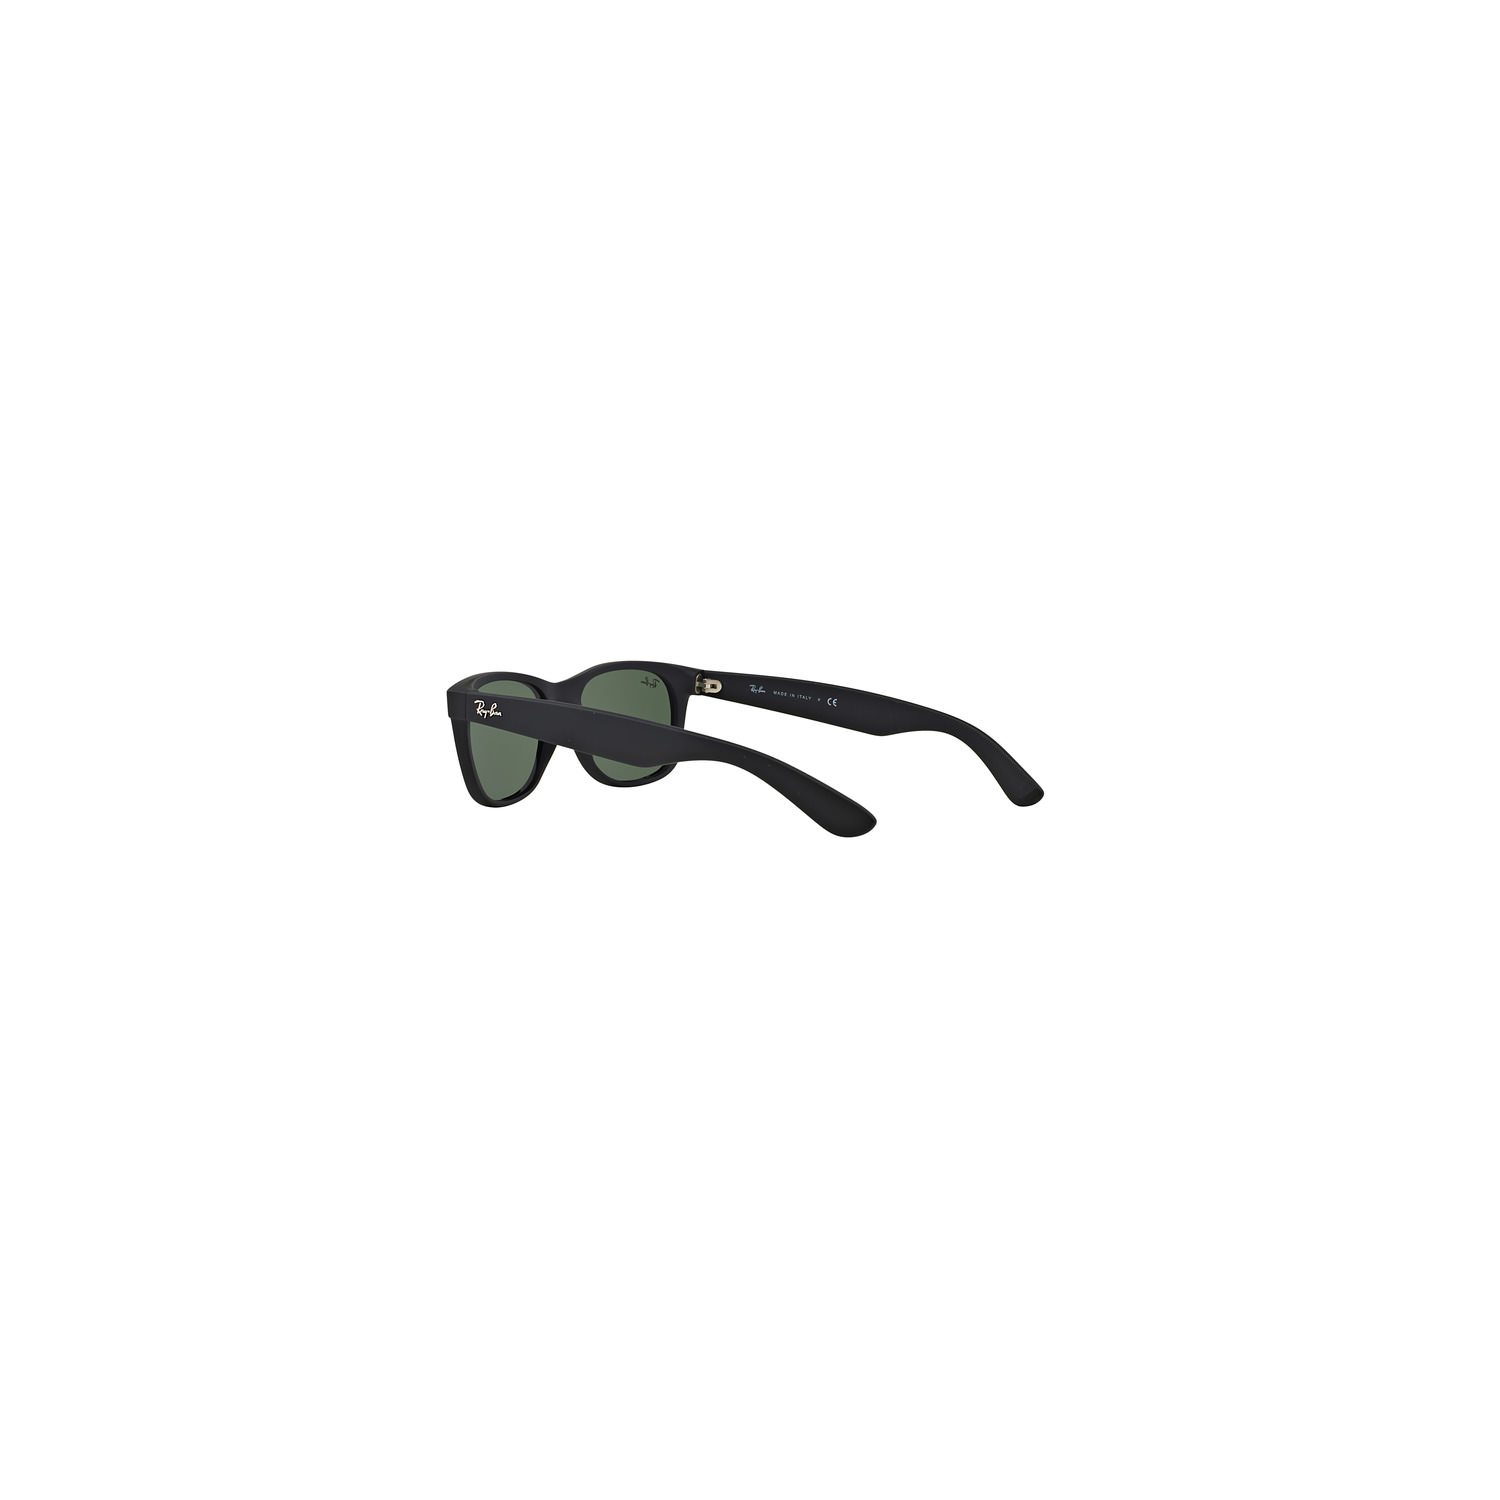 Wayfarer Sunglasses RB2132 Polarised